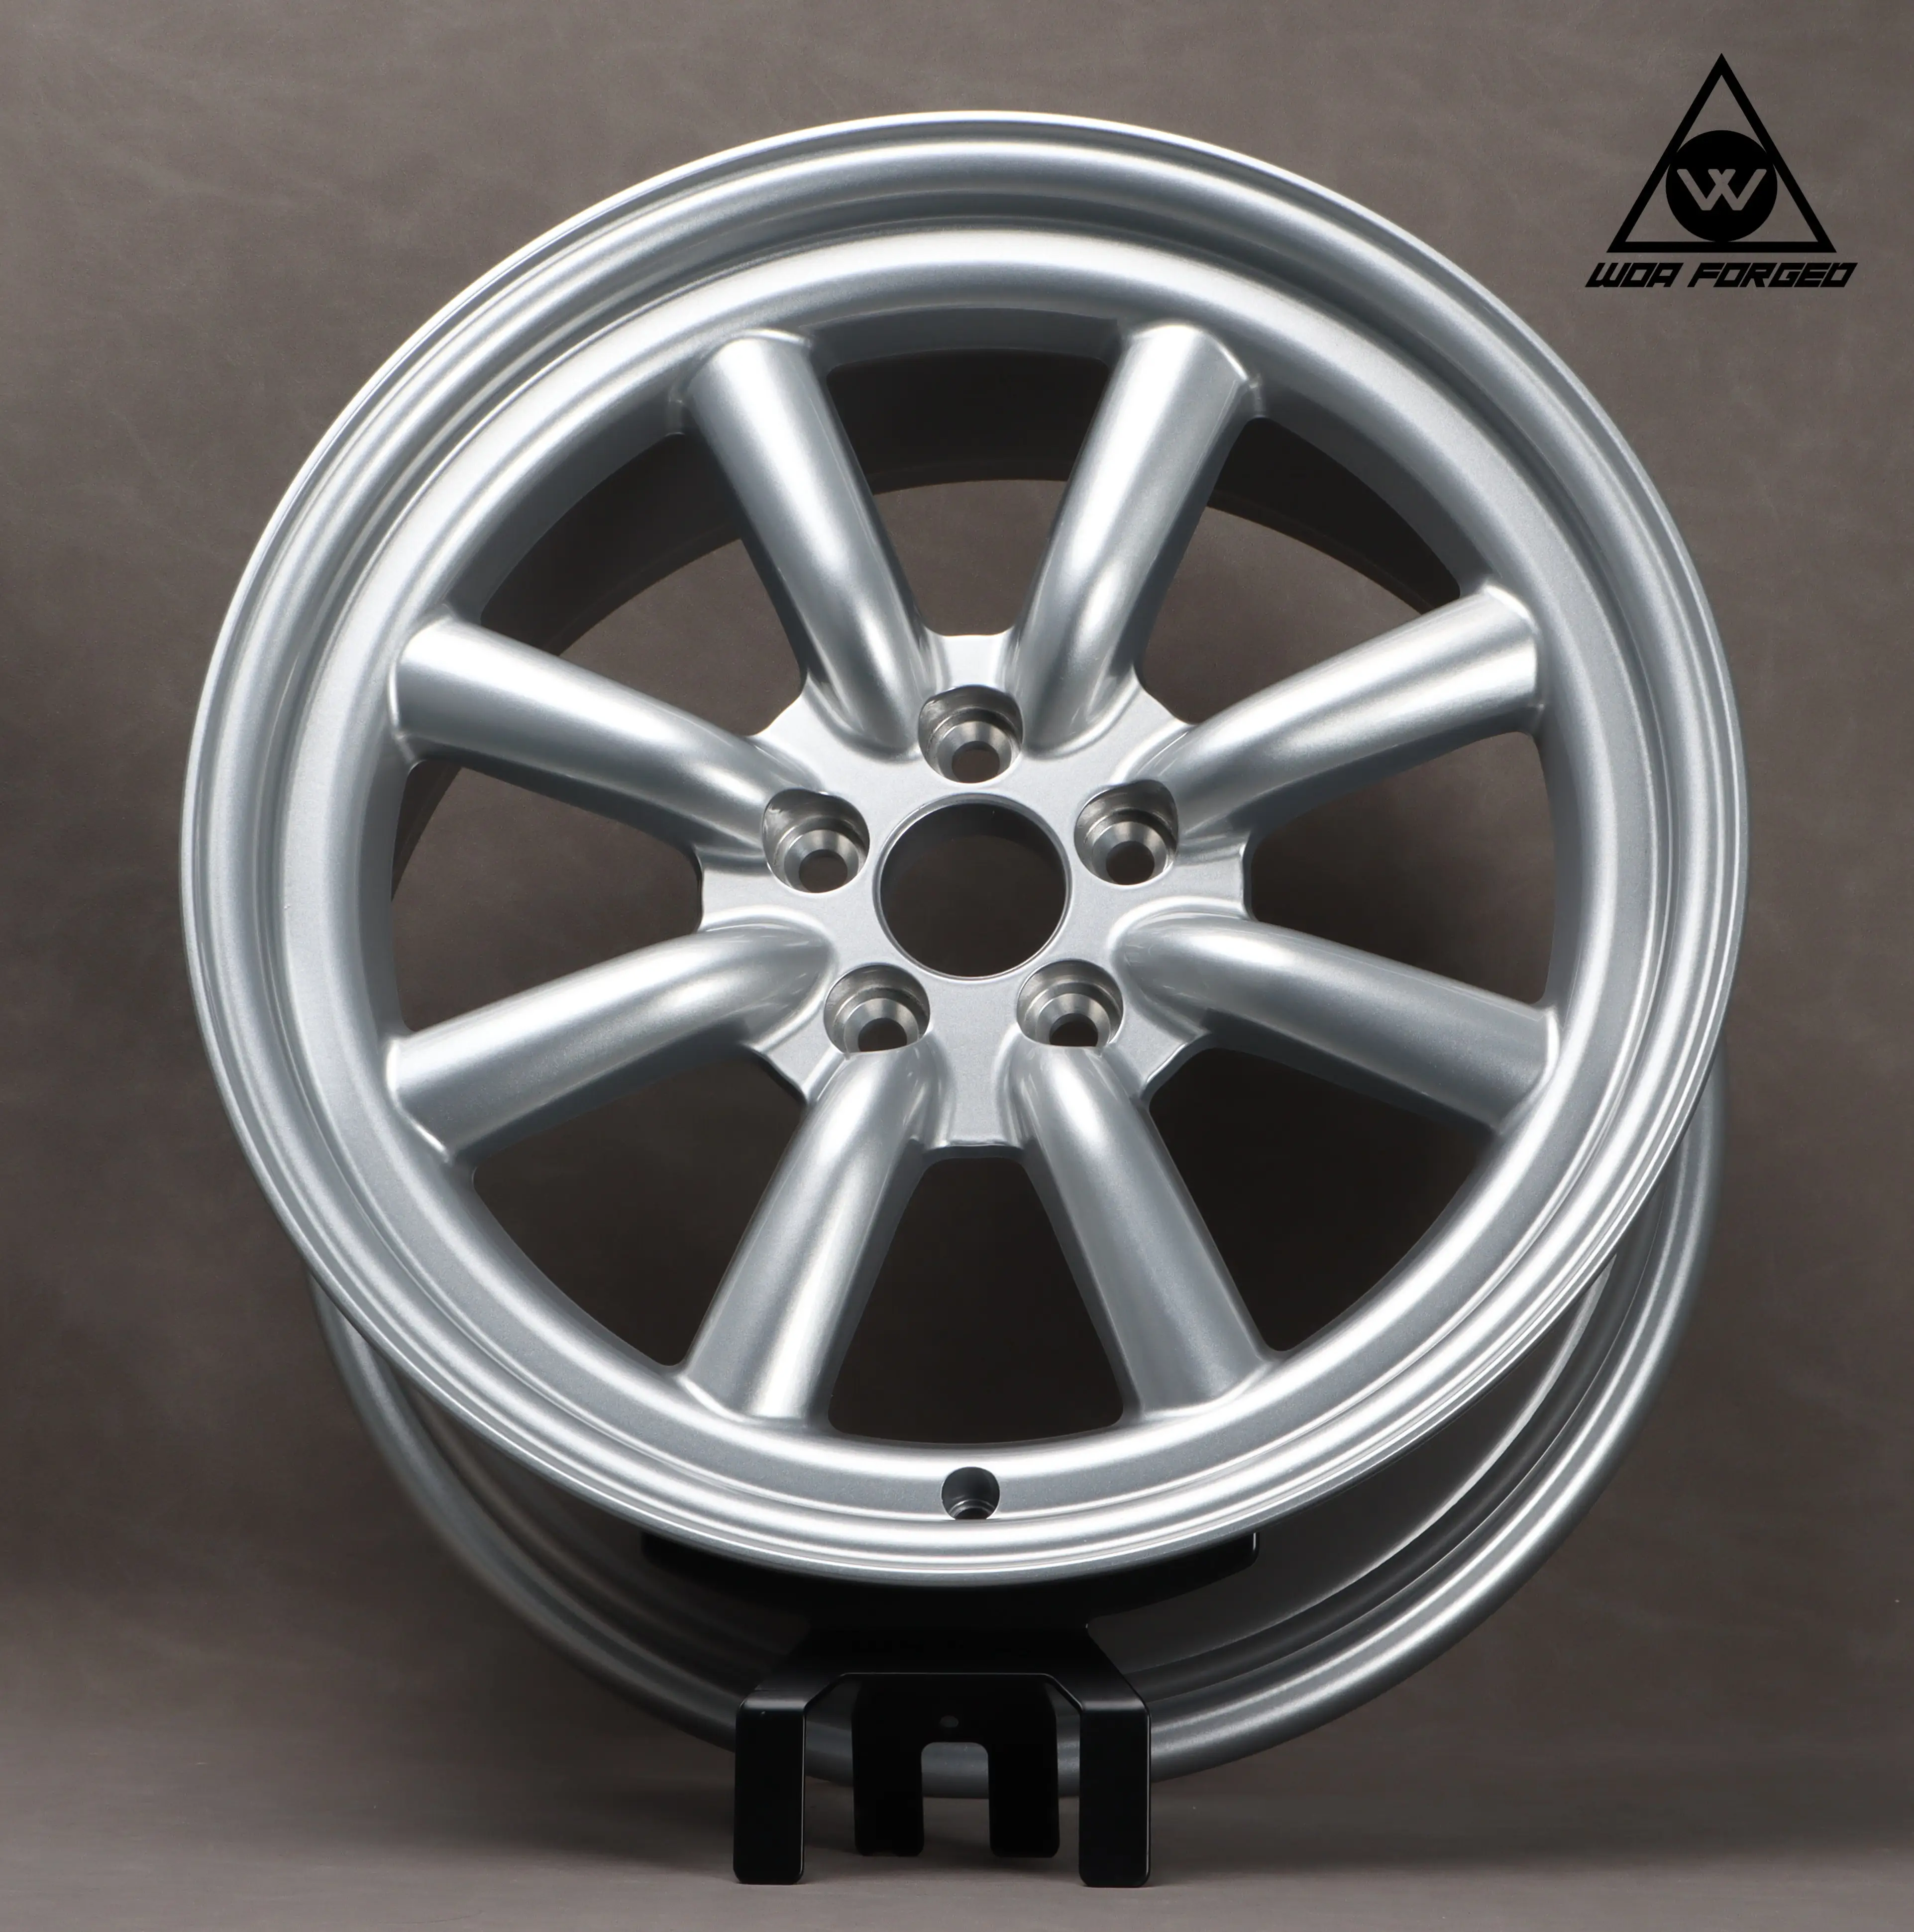 HOT SELLING Wheel Felge zu verkaufen 16 17 18 Zoll Marken qualität Watanabe andere heiß für jedes Auto geschmiedete Aluminium Aluminium Custom Räder